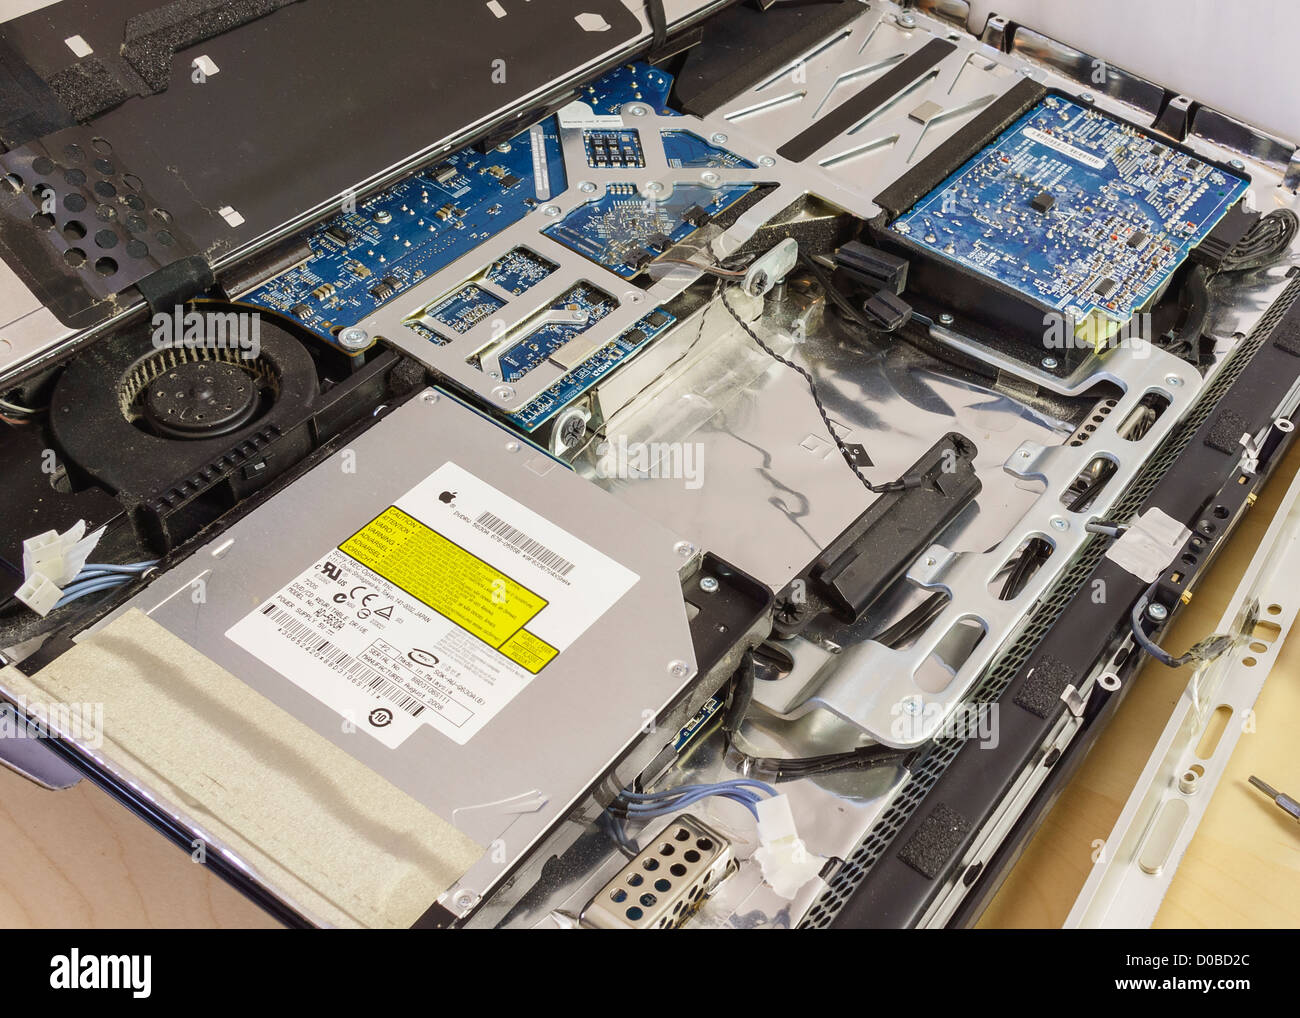 L'intérieur d'un iMac 2008. Remplacement de disque dur Photo Stock - Alamy